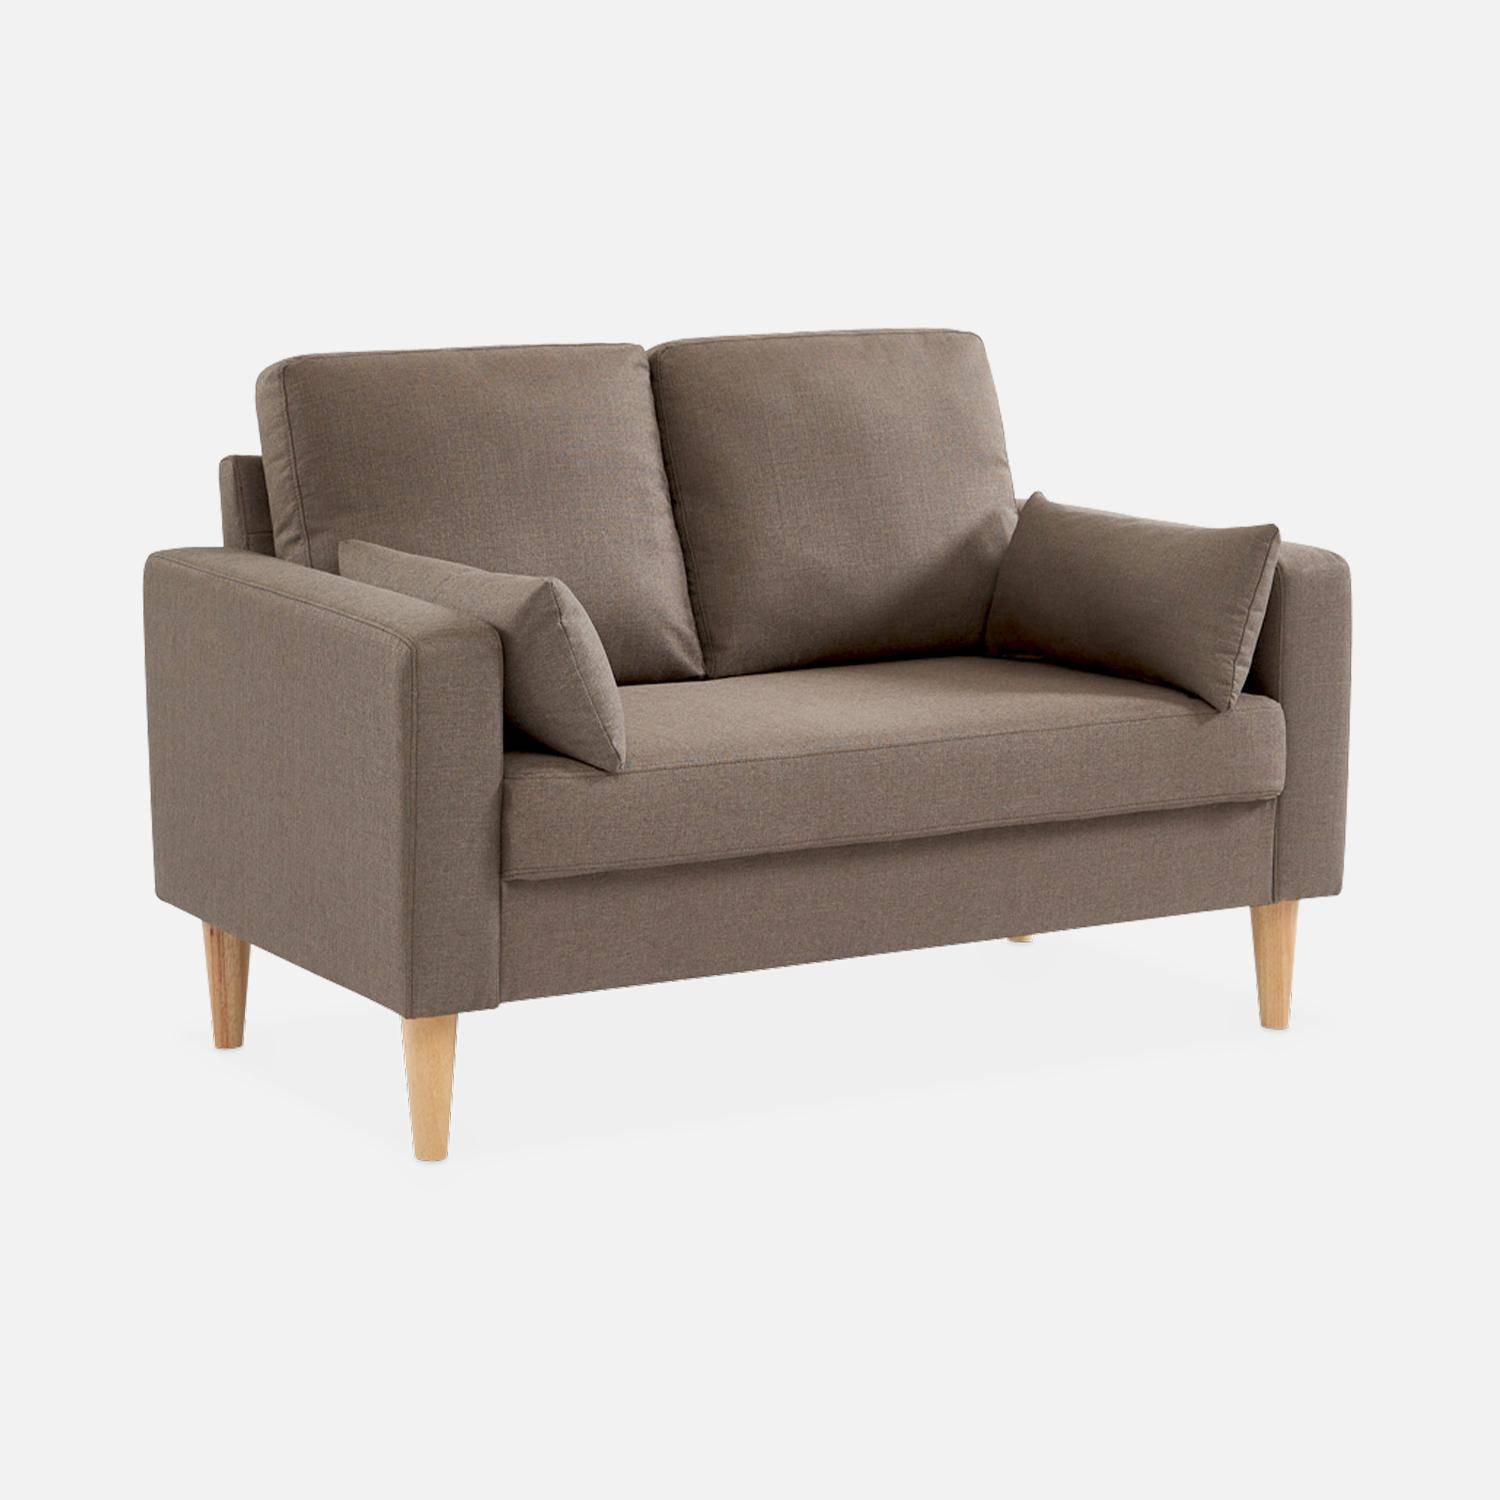 Stoffen tweezits sofa bruin - Bjorn - 2-zits bank met houten poten, scandinavische stijl  ,sweeek,Photo2